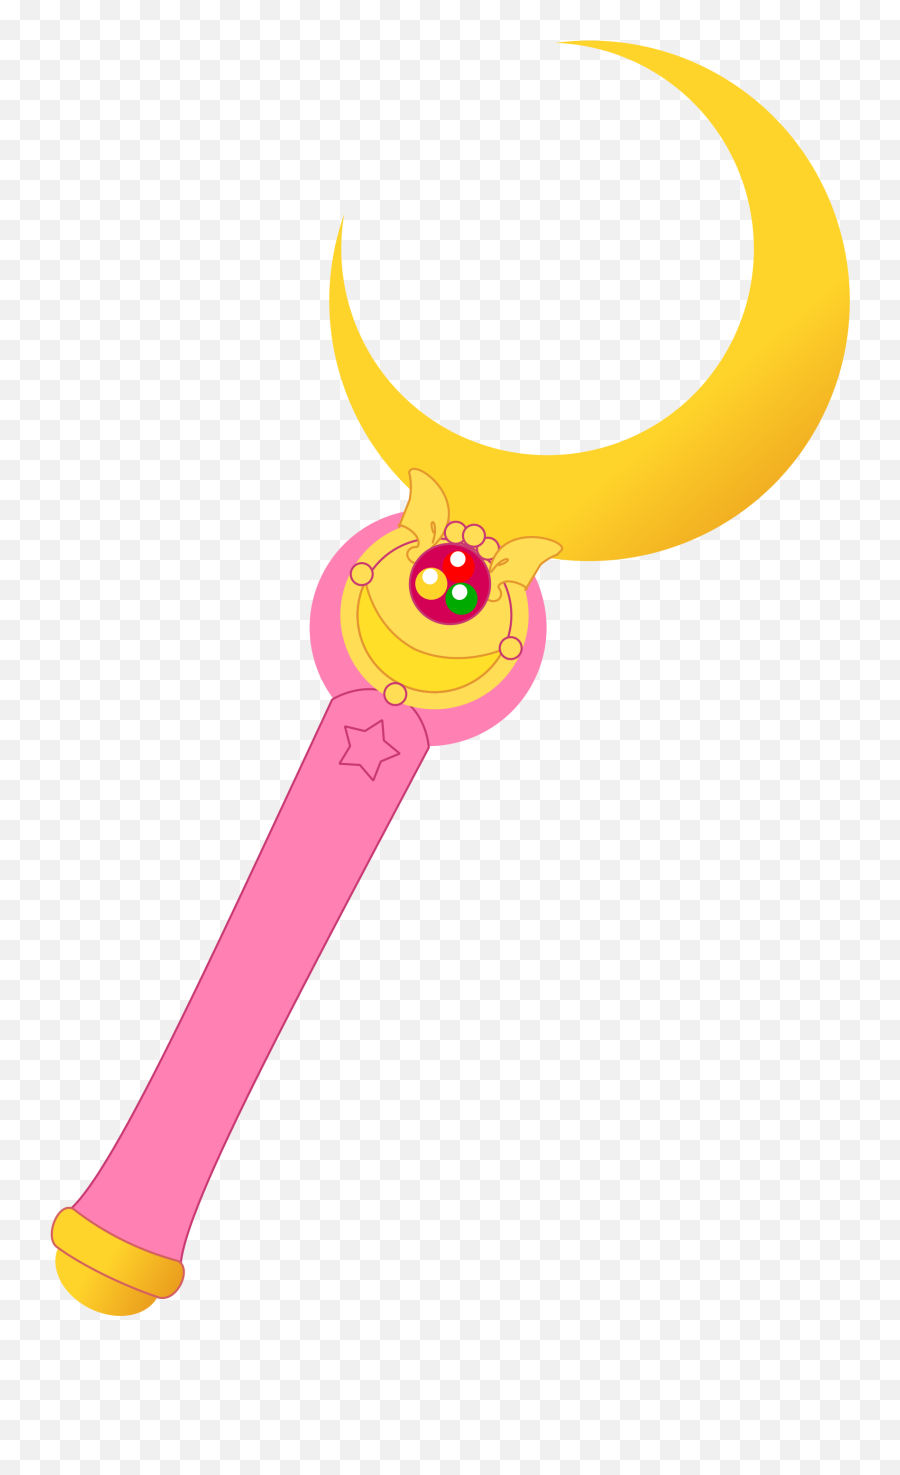 Moon Wand Vector - Sailor Moon Wand Vector Emoji,Wand Emoji